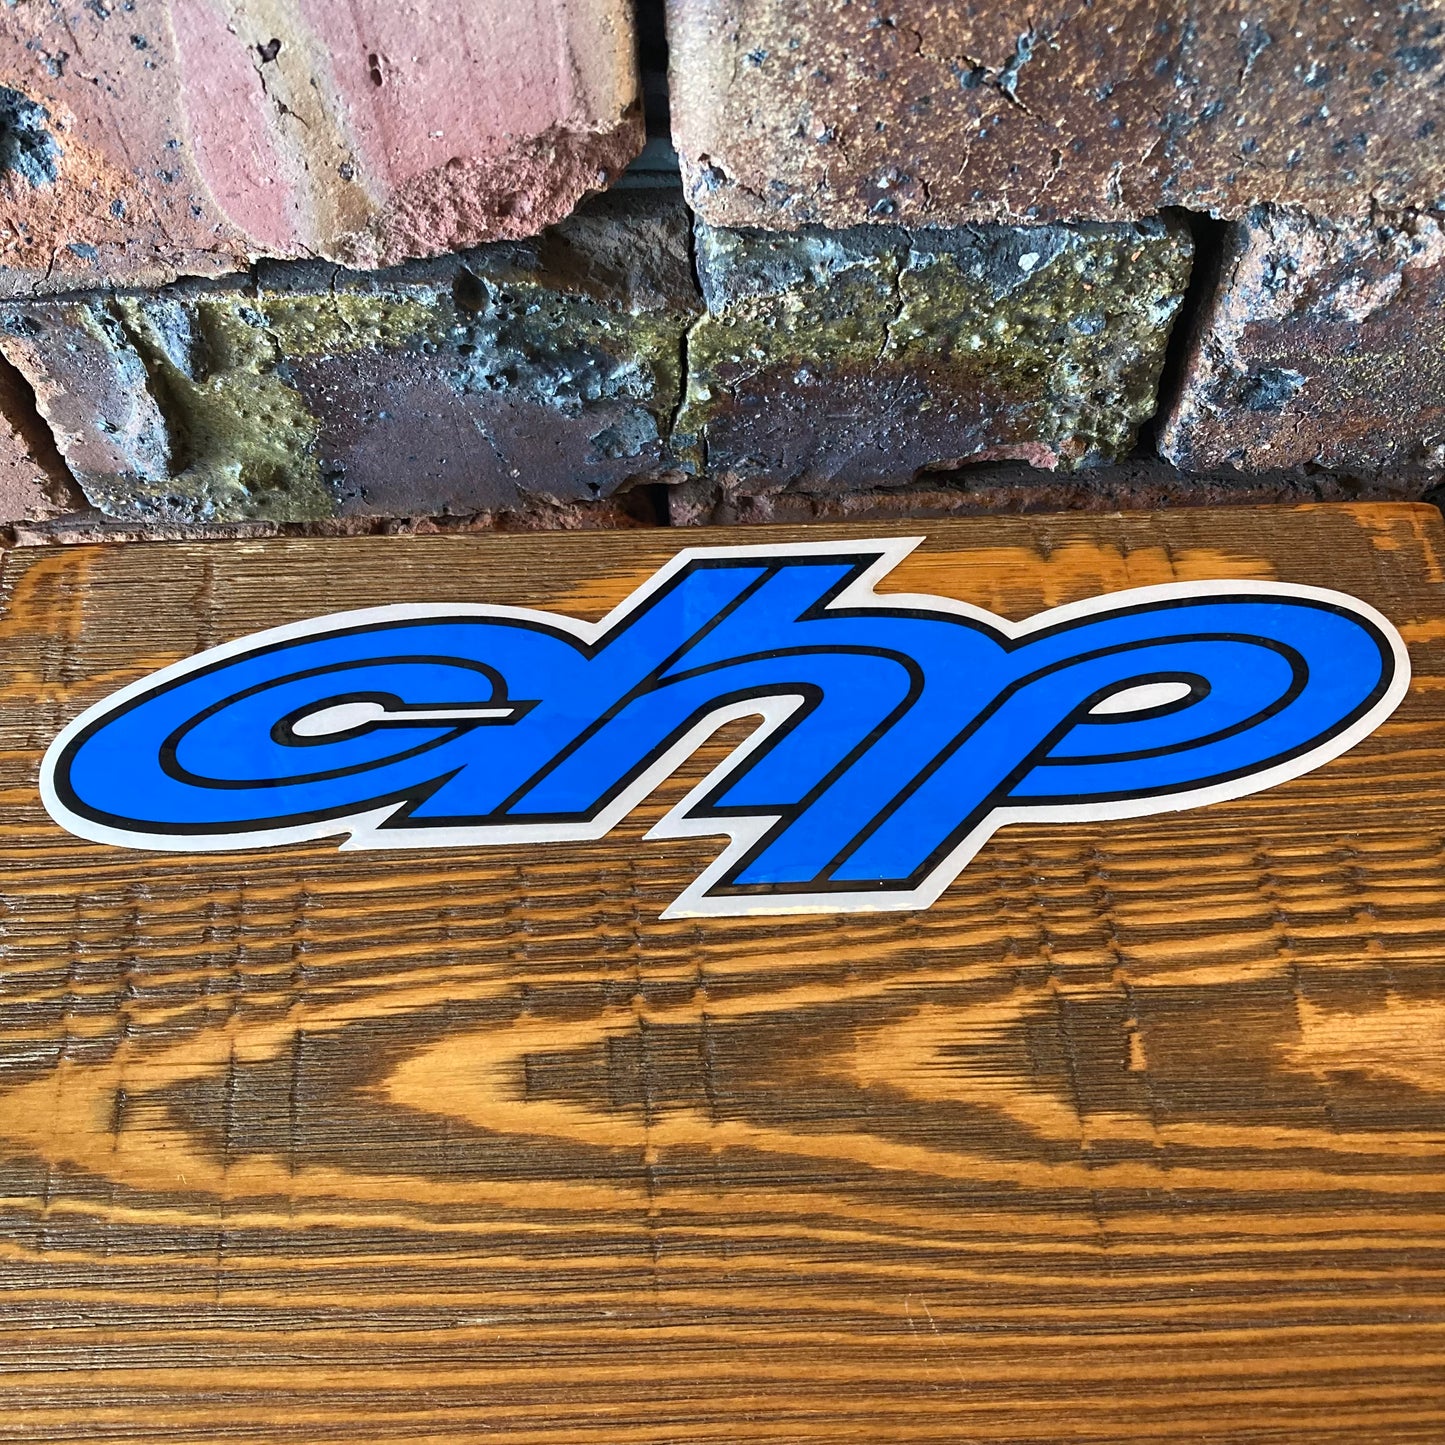 CHP sticker